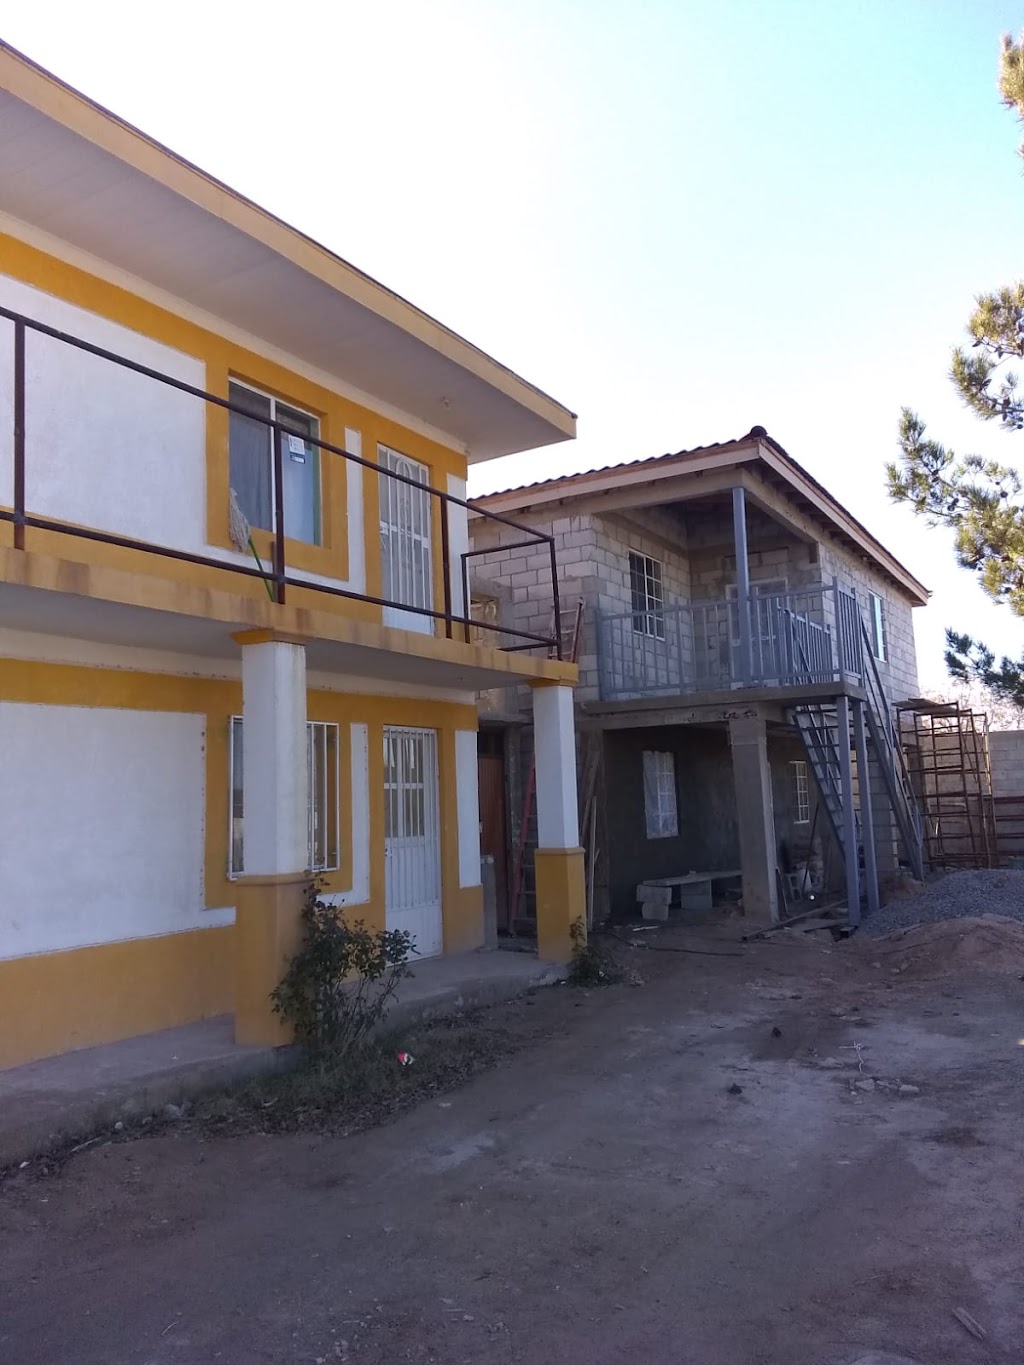 Apartamentospedroza | E. Medrano 529, 32730 Samalayuca, Chih., Mexico | Phone: 656 780 6228